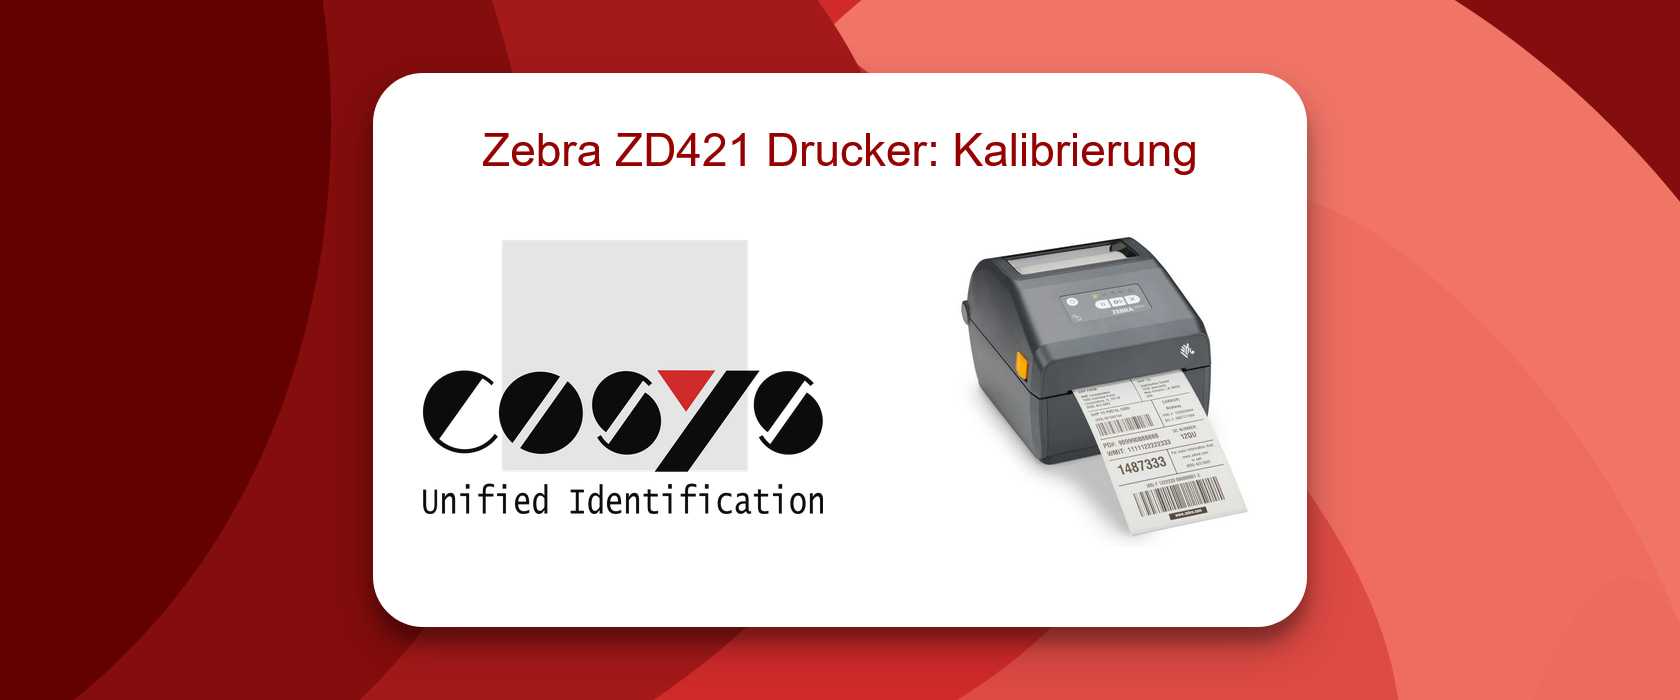 Zebra ZD421 Drucker Kalibrierung